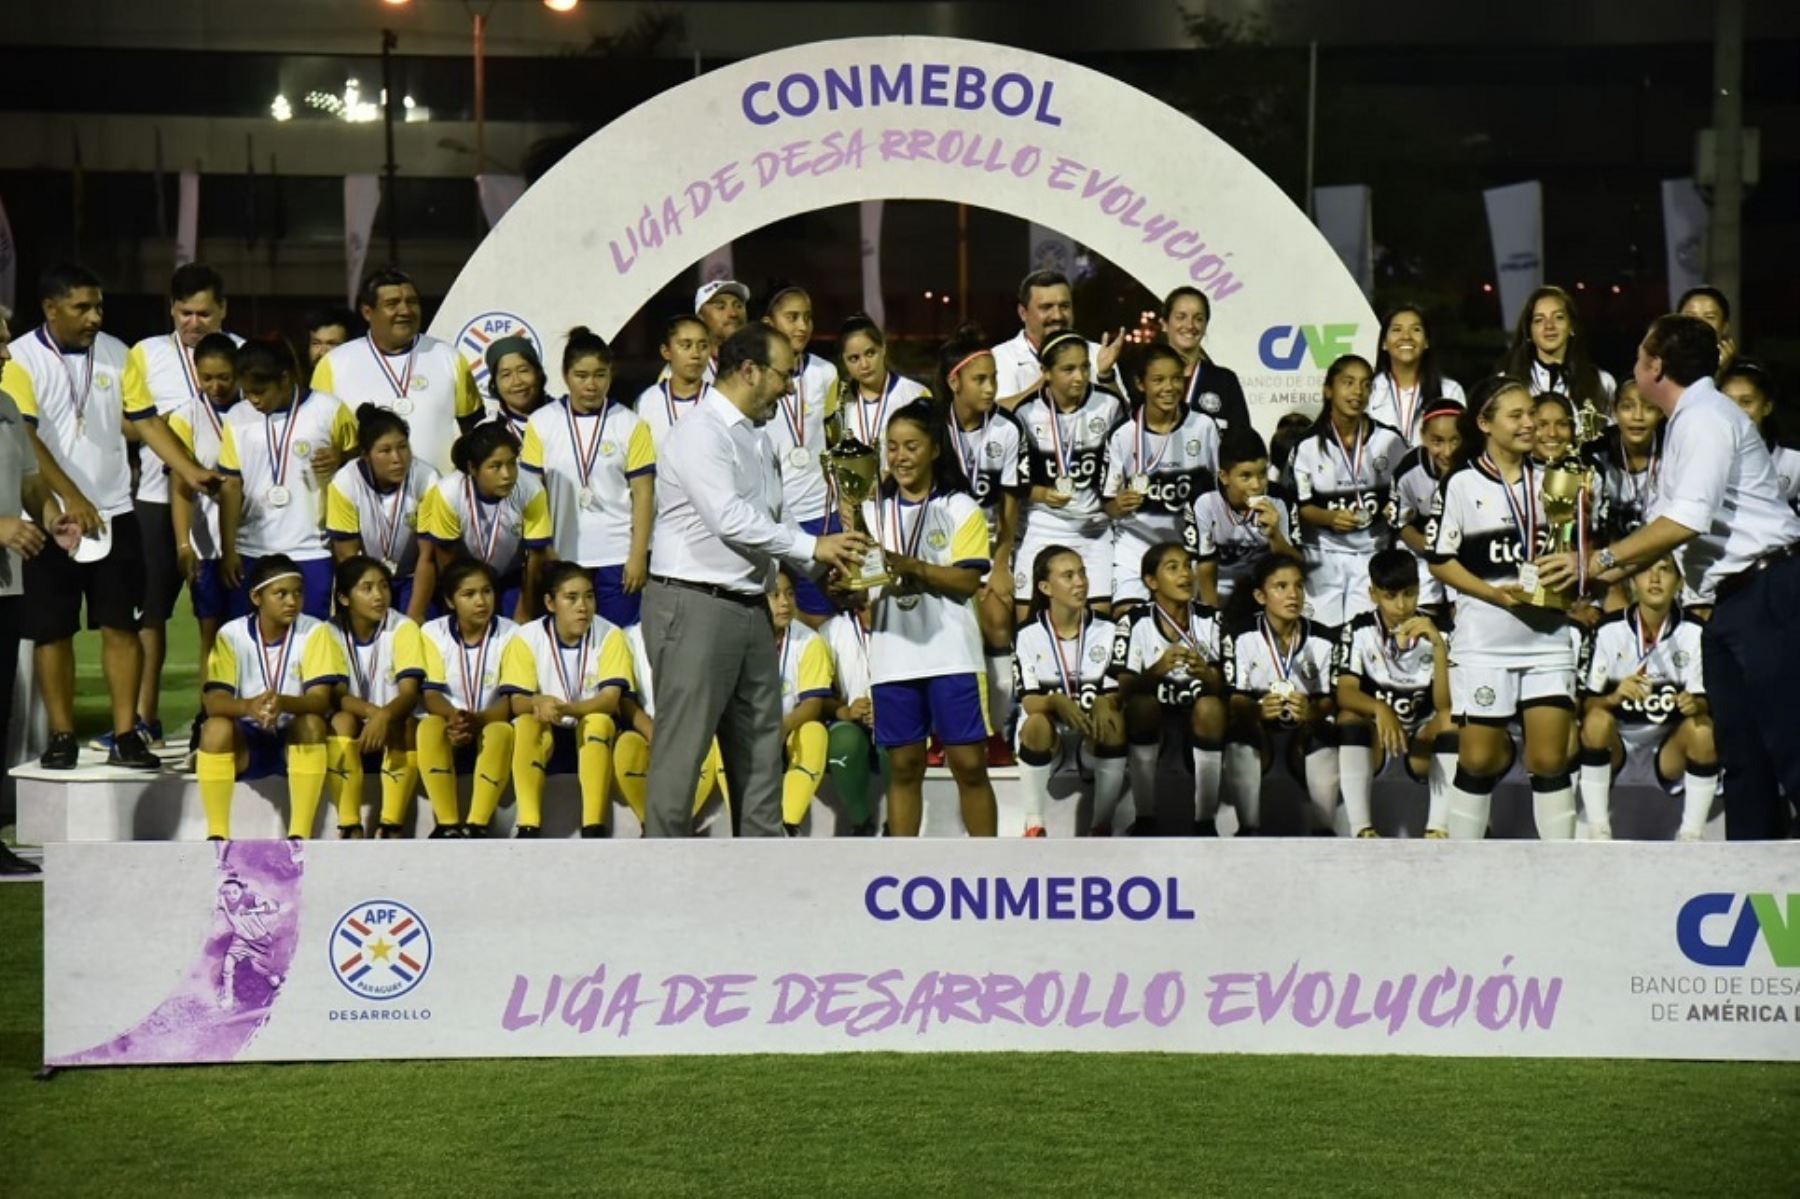 CAF, el Banco de Desarrollo de América Latina y la Conmebol trabajarán en conjunto para promover el empoderamiento de la mujer a través del fútbol. Foto: Cortesía.